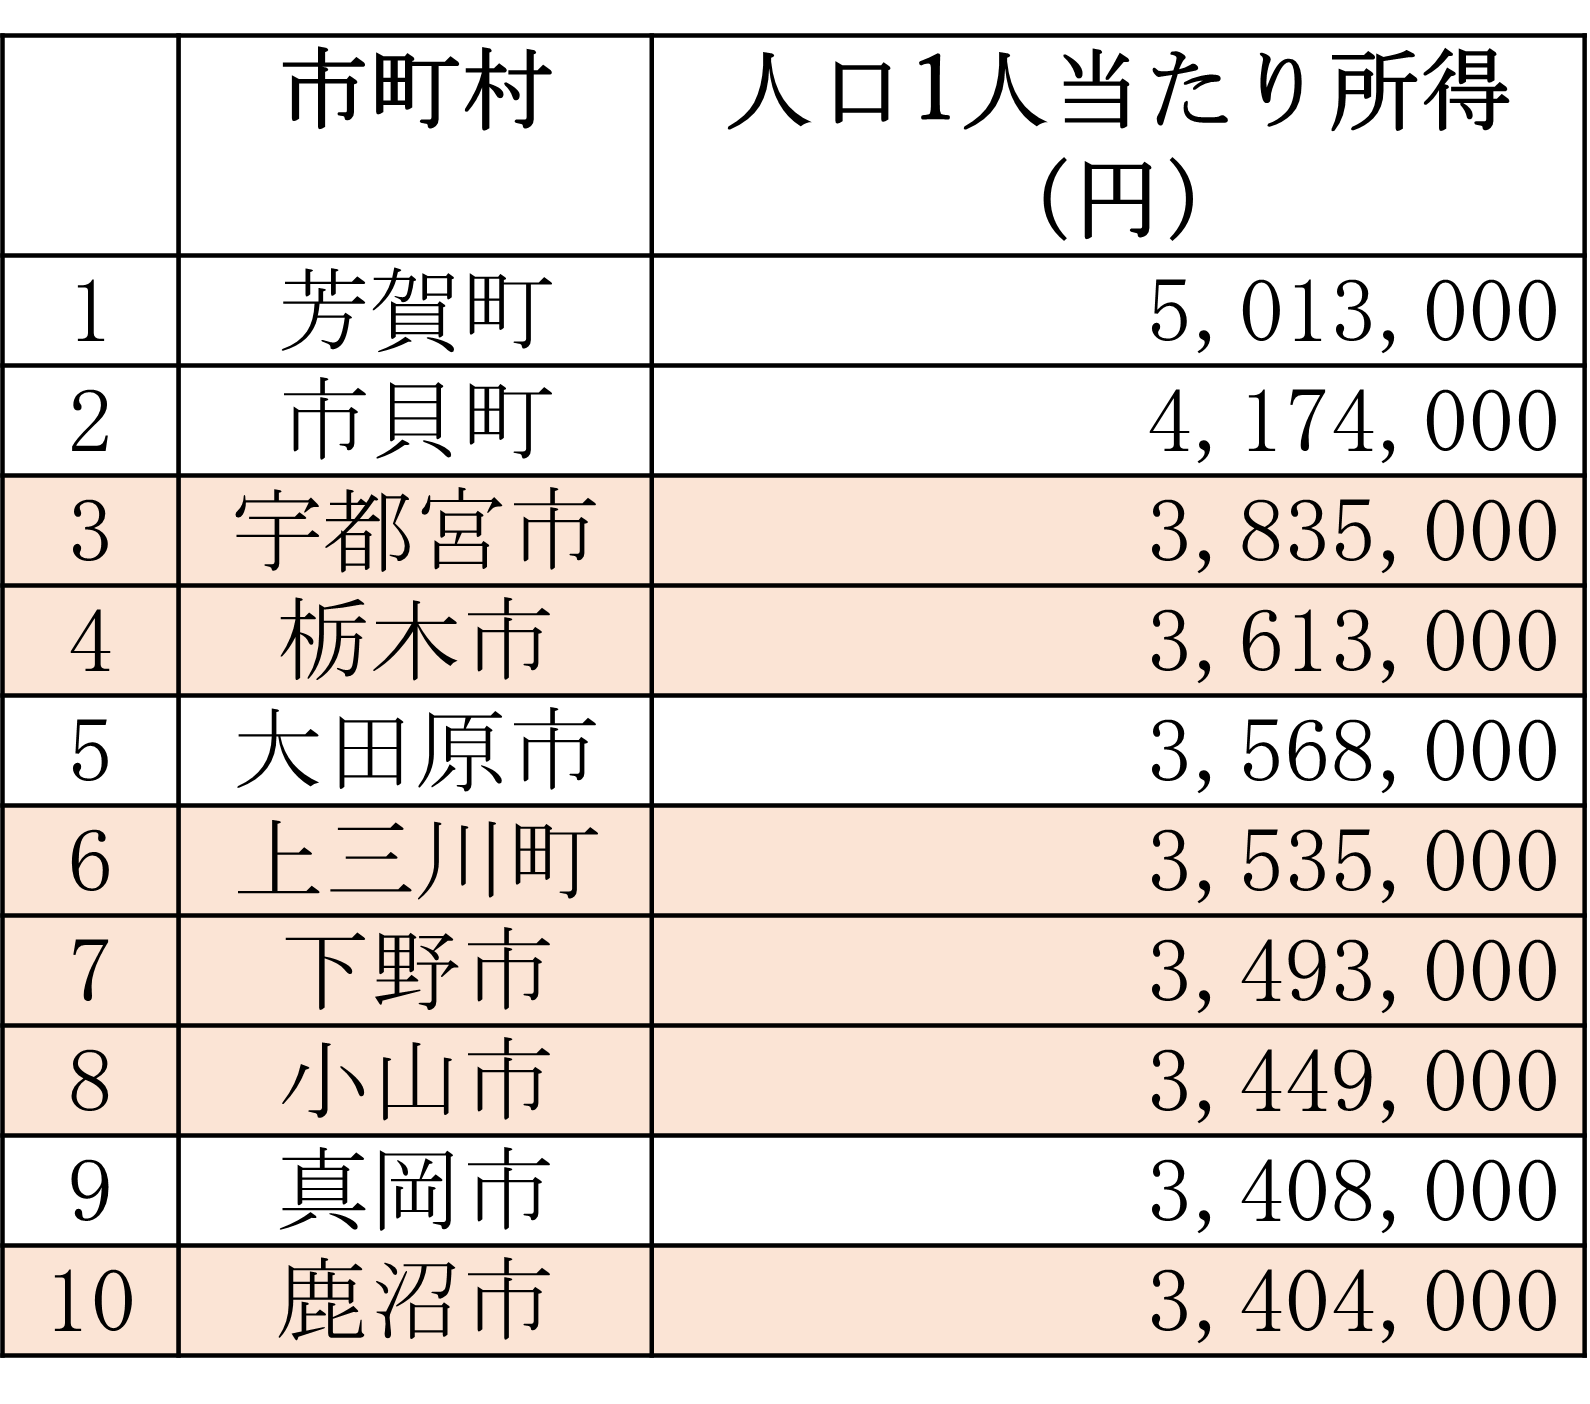 栃木県所得ランキング.png